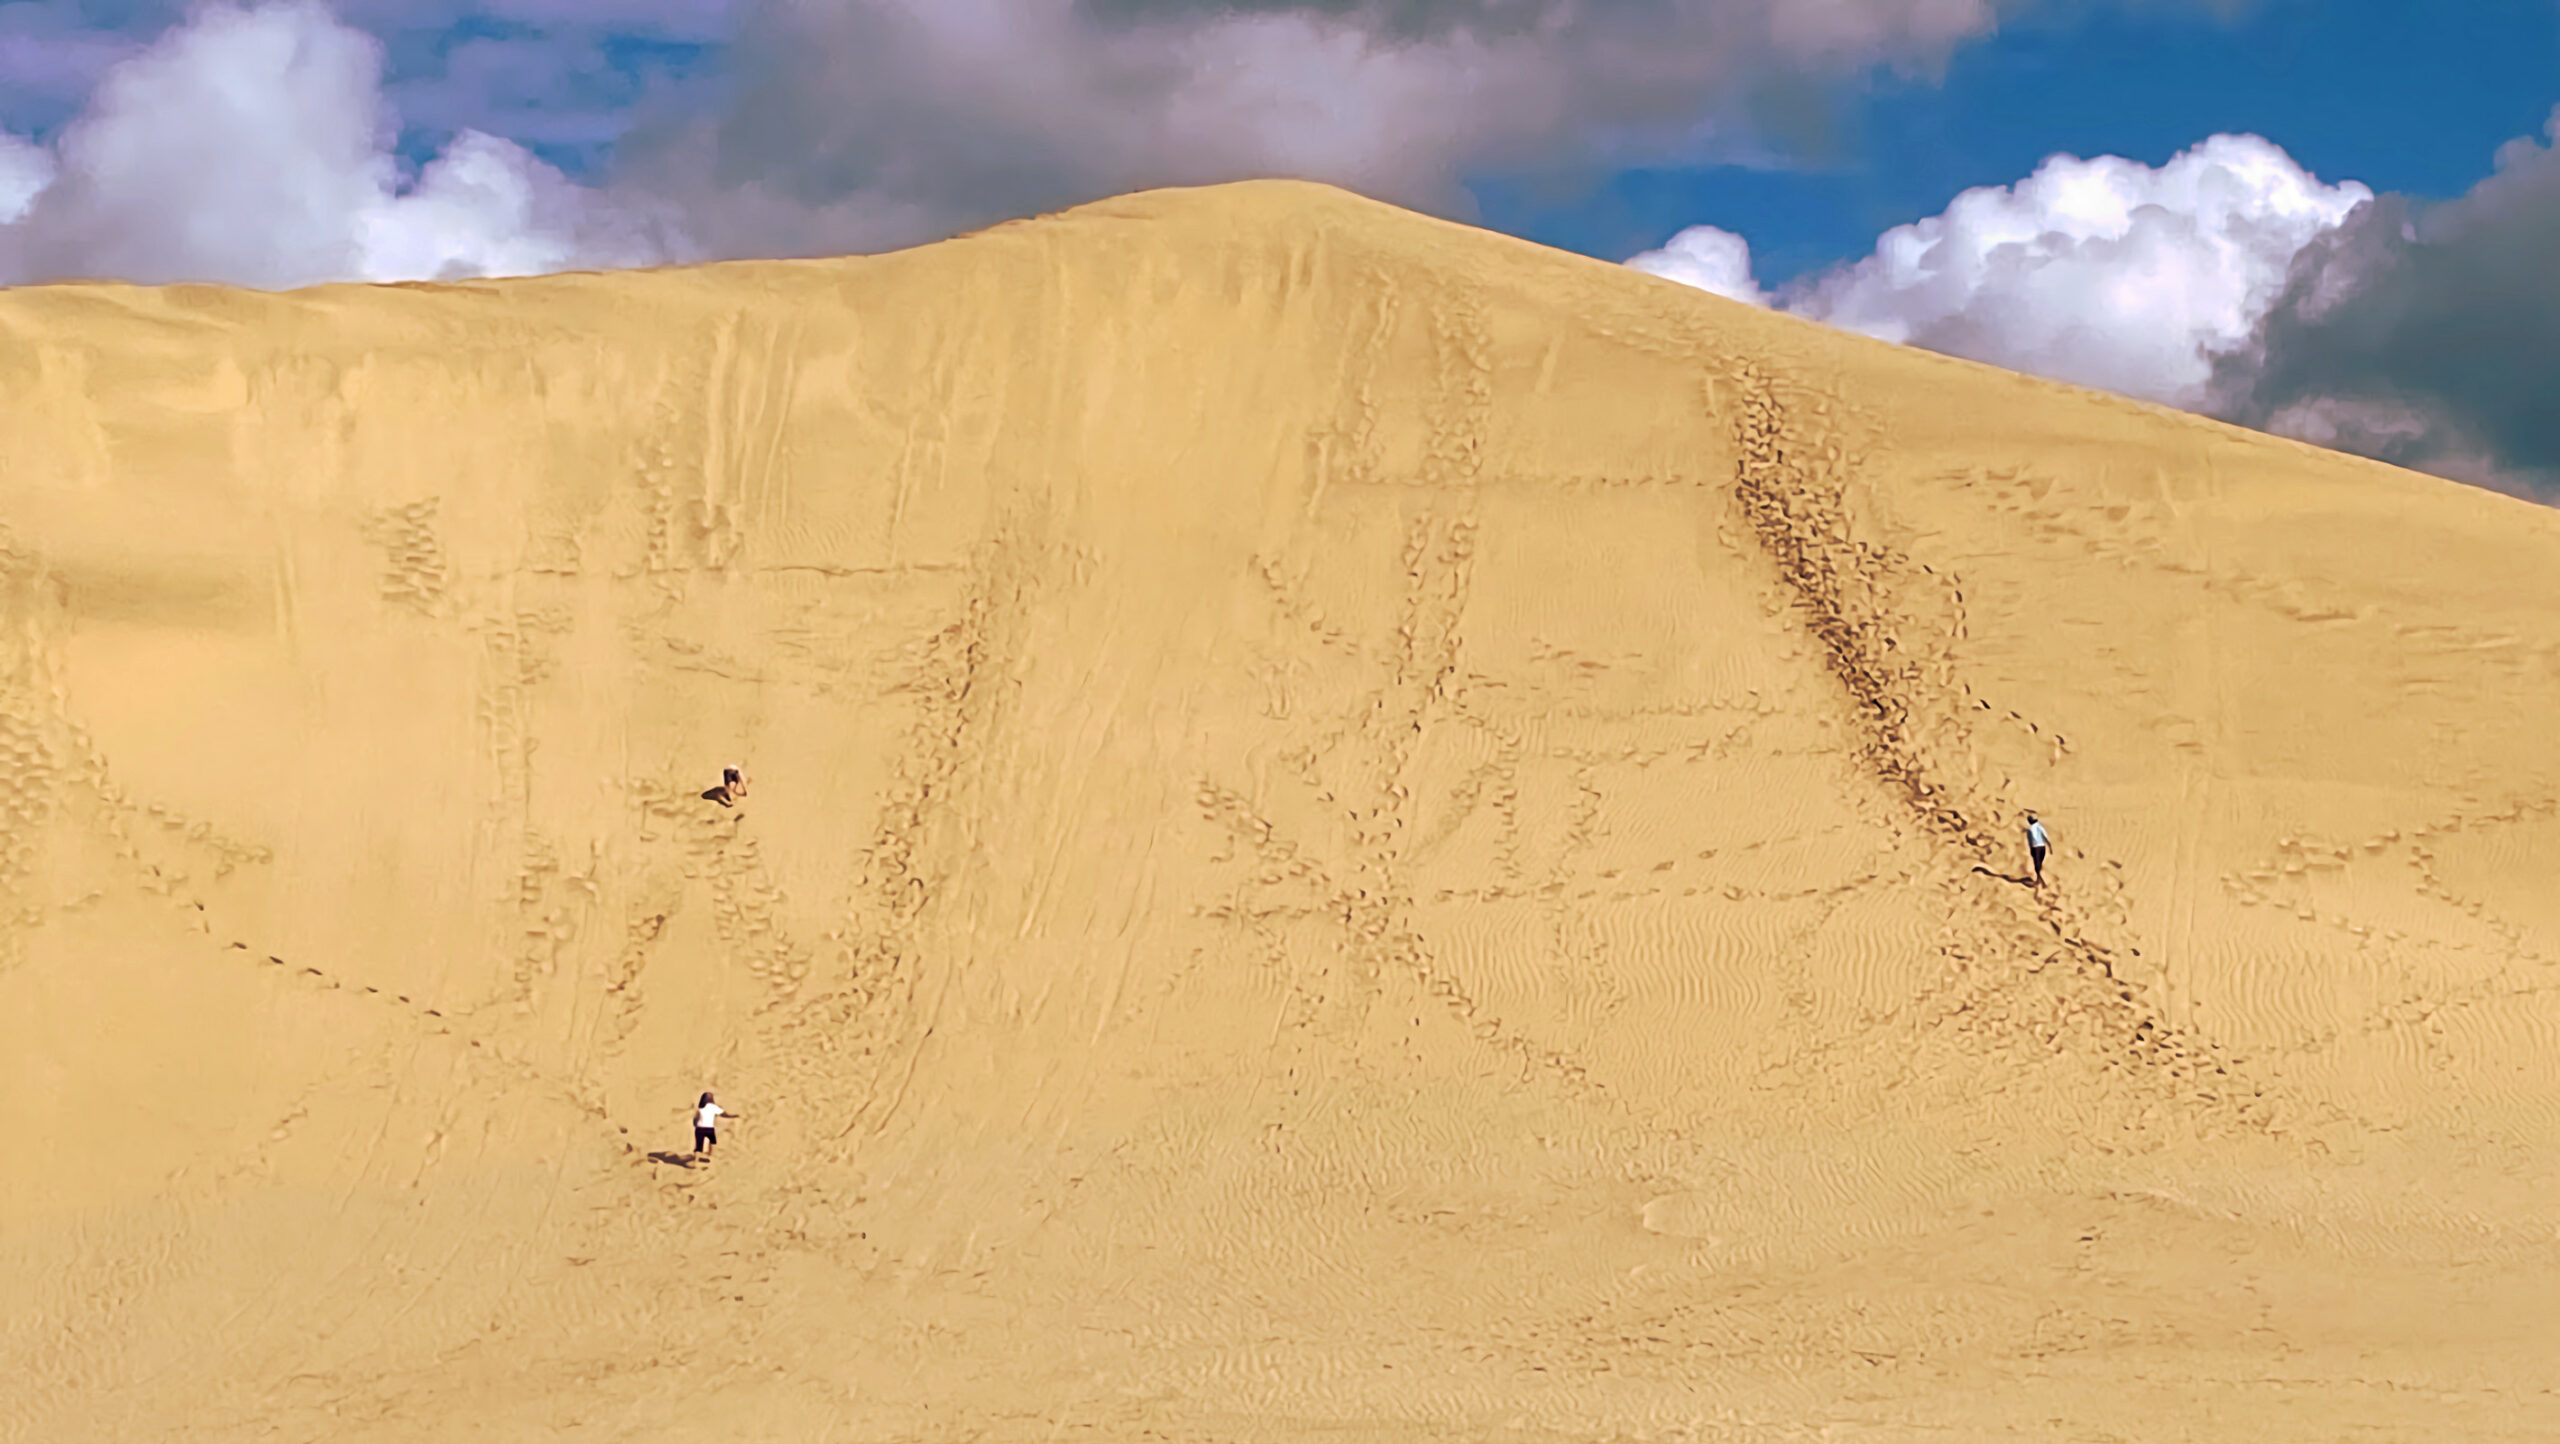 السياح يتزلجون على الرمال في الكثبان الرملية العملاقة في تي باكي